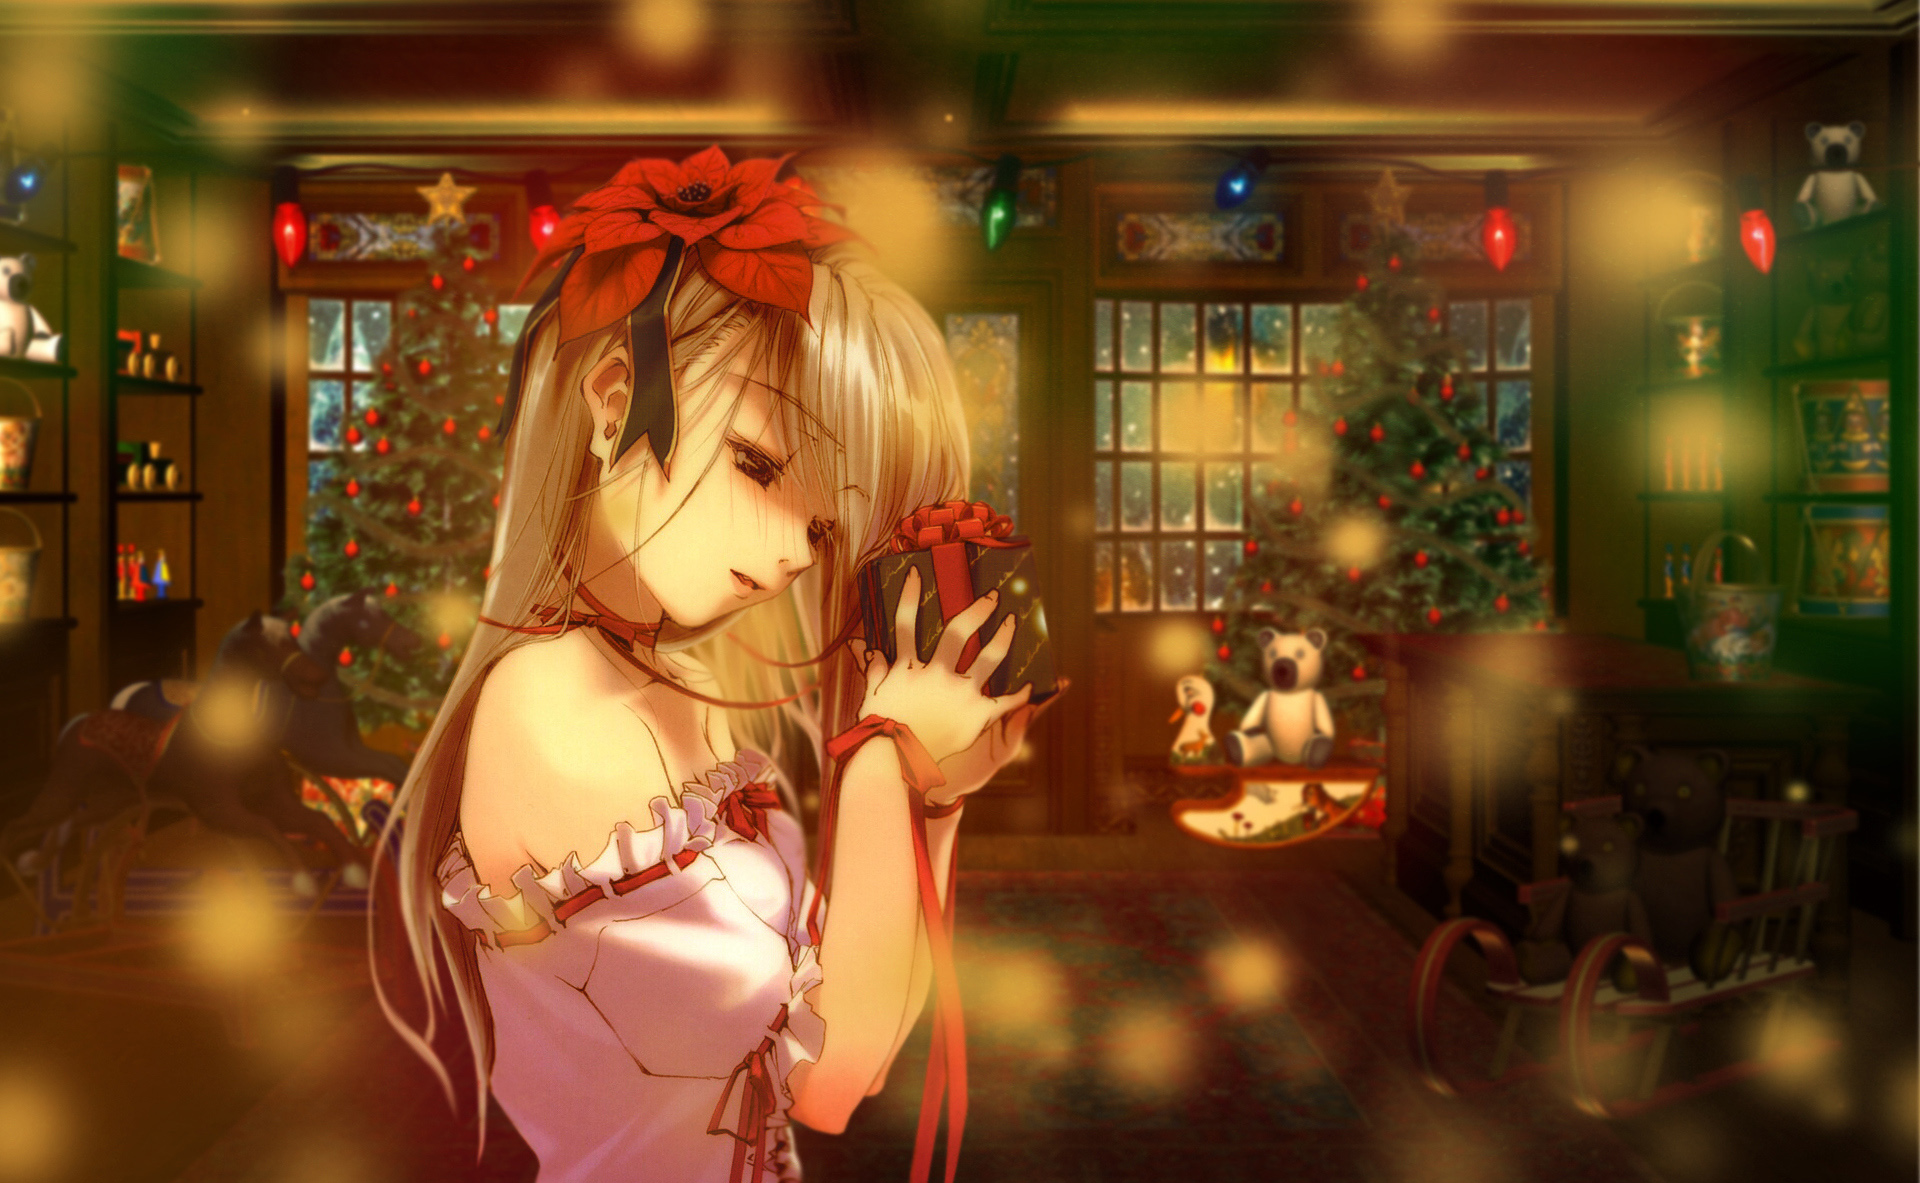 Pretty Anime Christmas Girl Wallpaper Dreamlovewallpaper